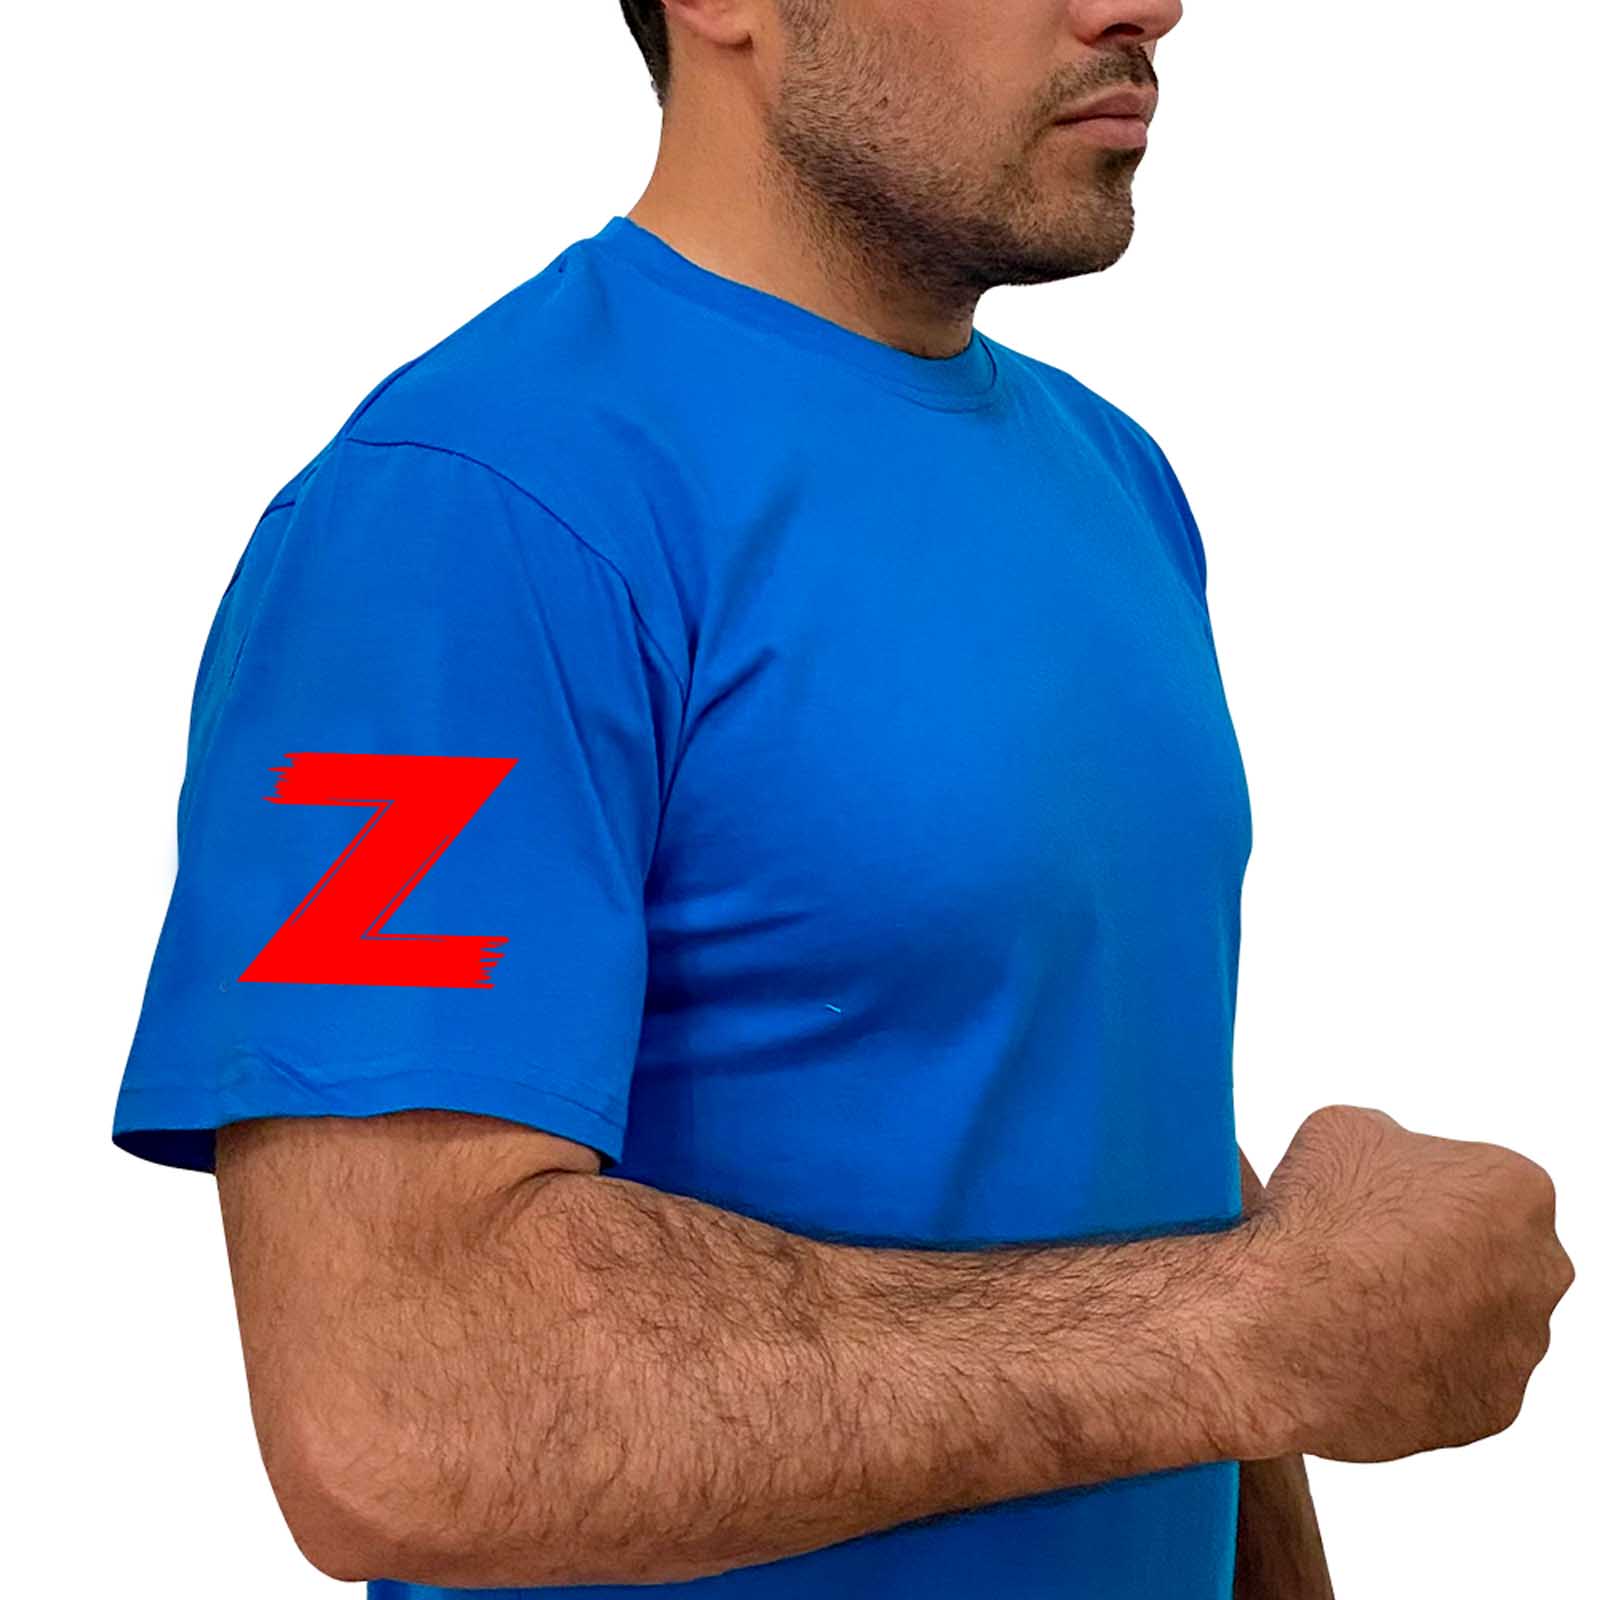 Купить надежную трикотажную футболку с литерой Z онлайн